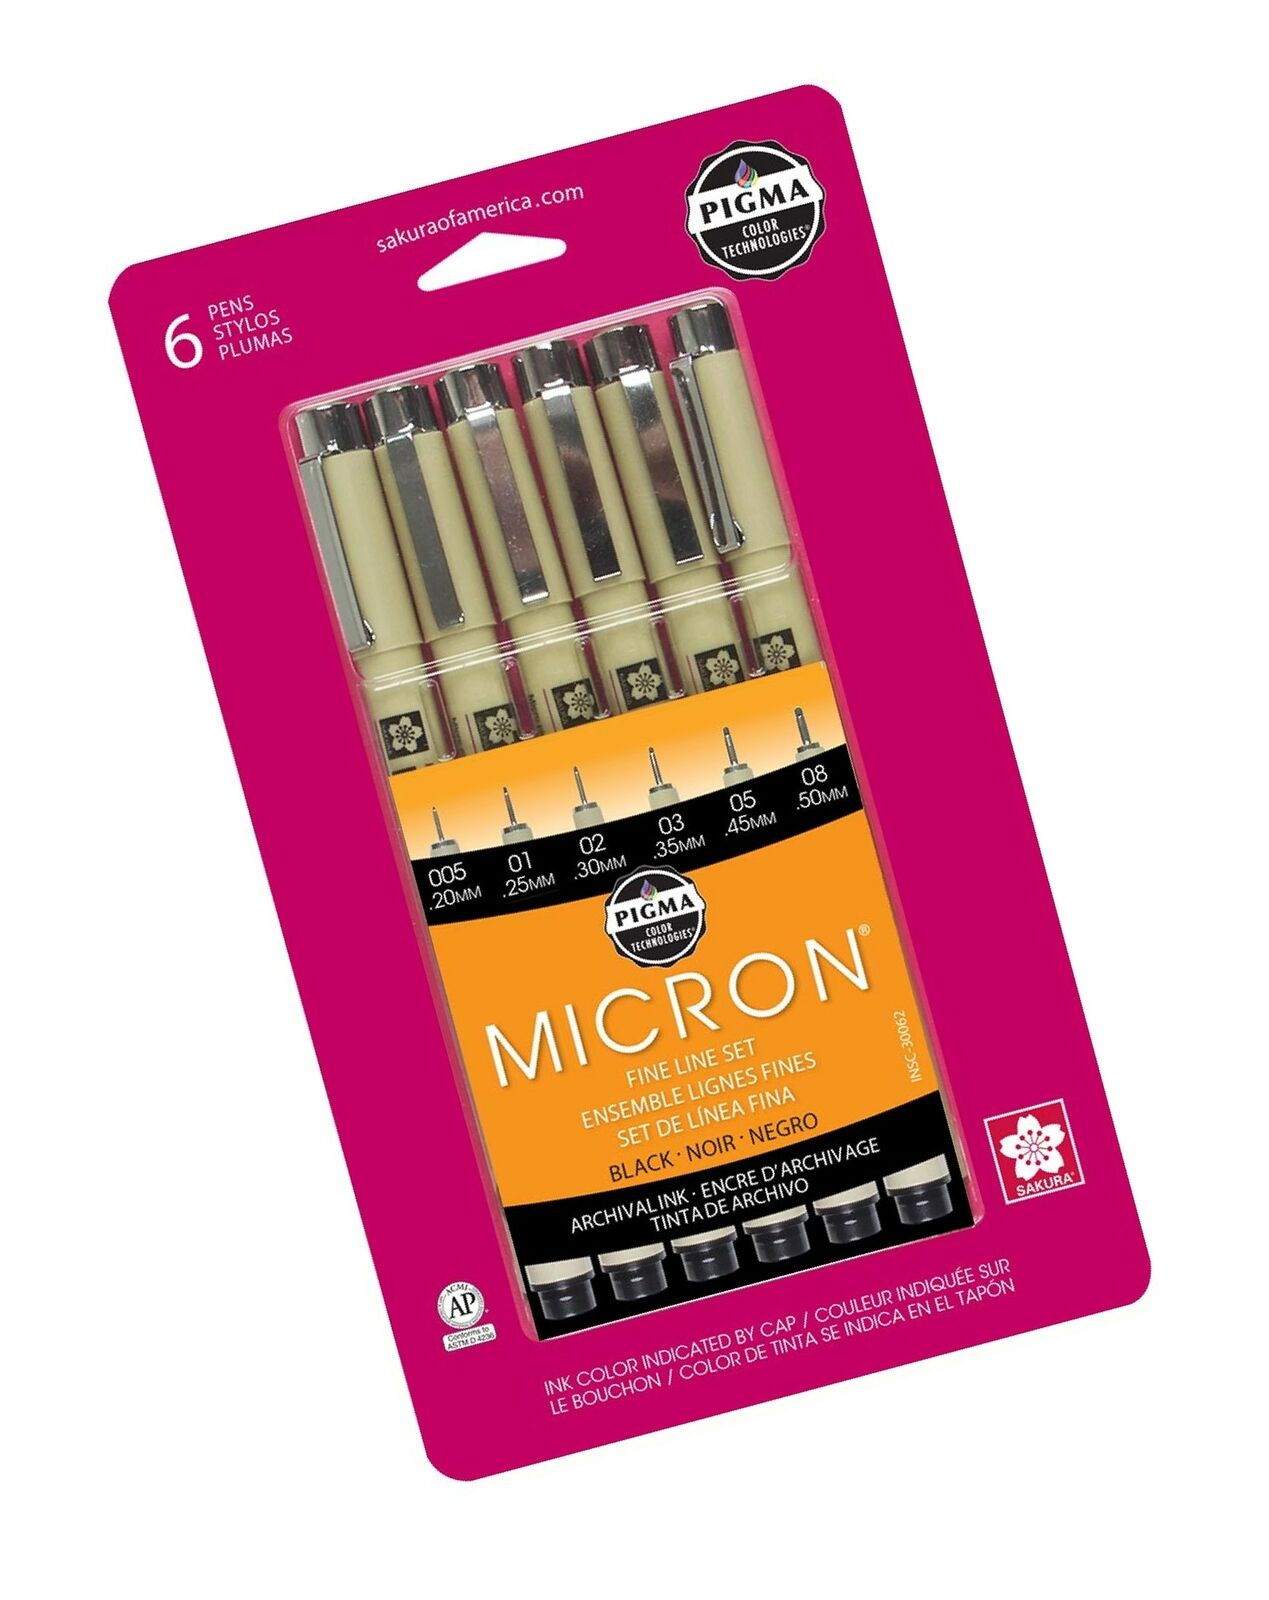 Assorted Black Ink Fineliner Pens - 6 pack